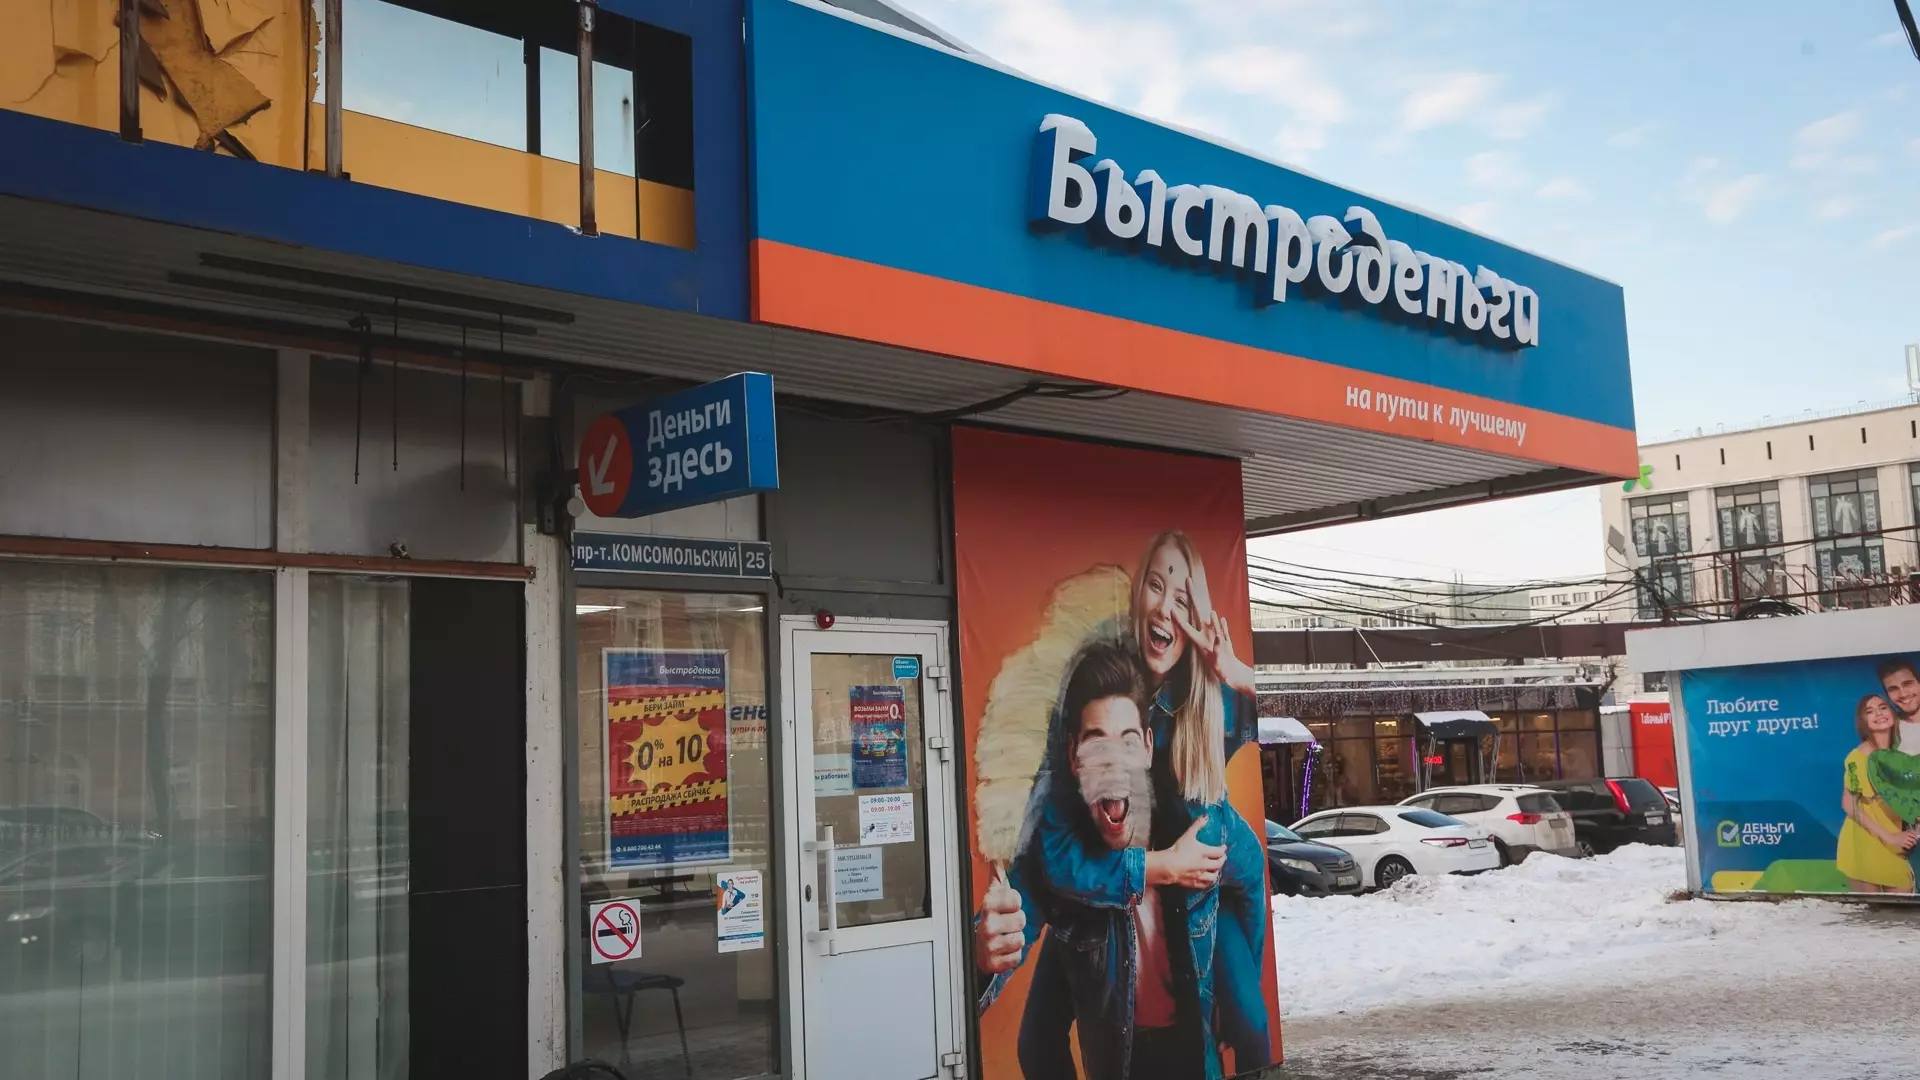 Руки прочь от кредитов! Как помочь россиянам избавиться от банковских долгов